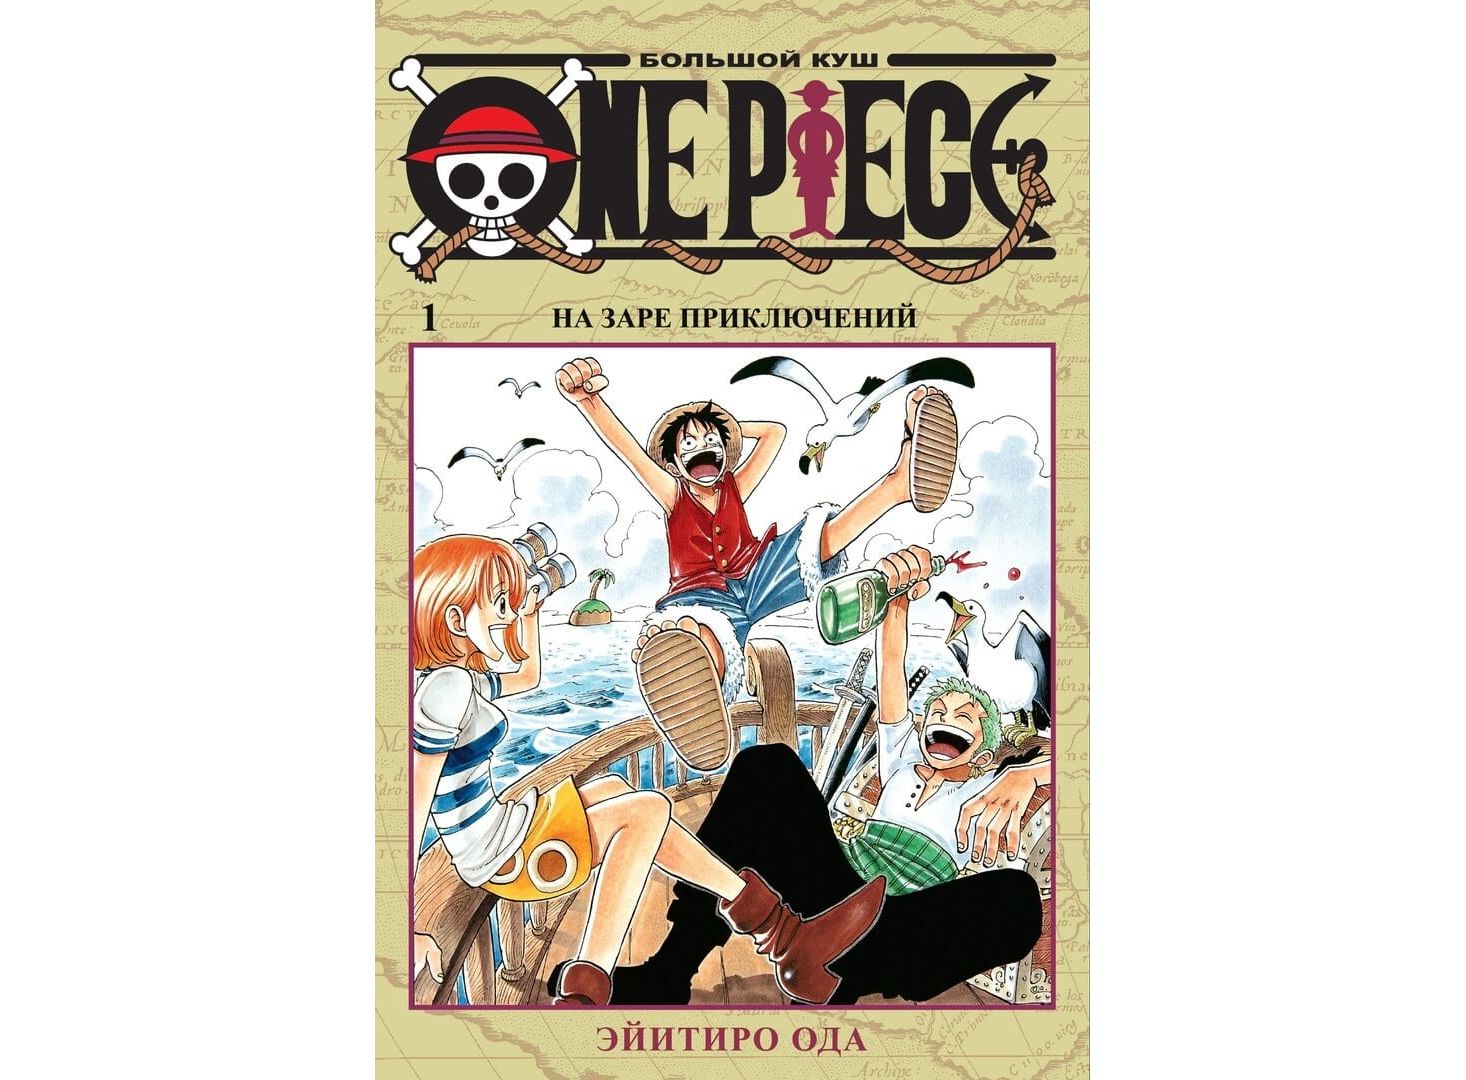 Манга One Piece. Большой куш, книга 1 (омнибус) - купить в 